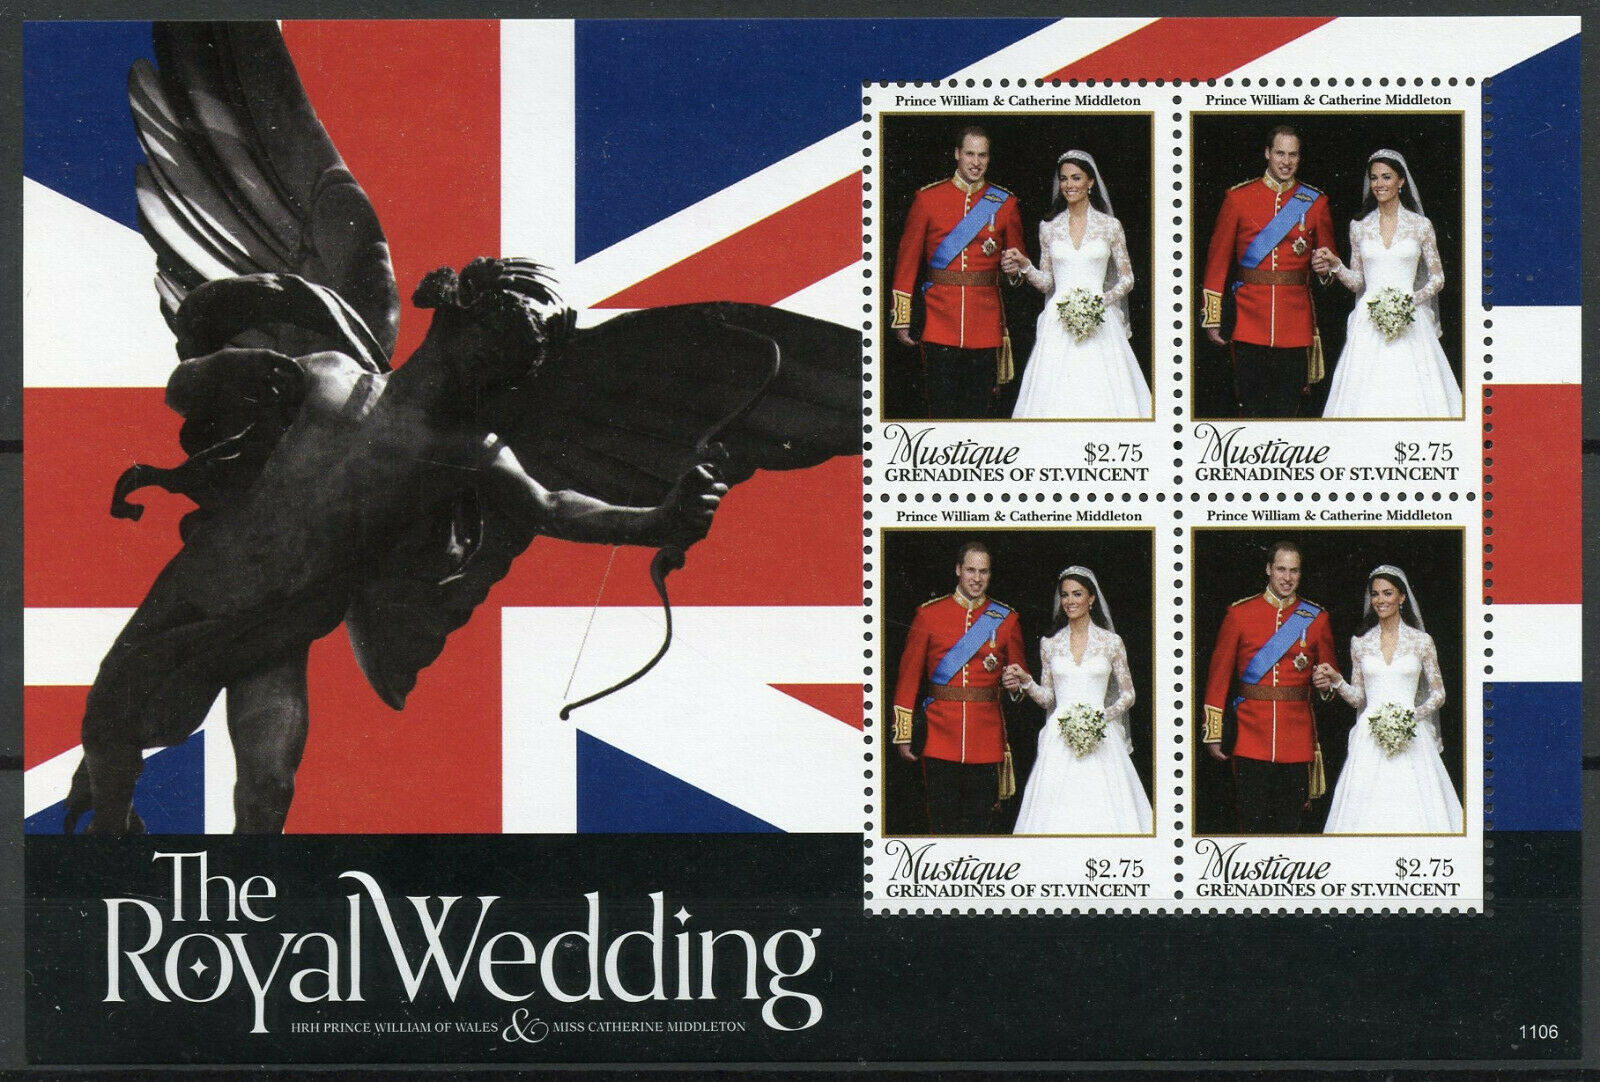 Mustique Gren St Vincent Stamps 2011 MNH Royal Wedding William & Kate 4v M/S I